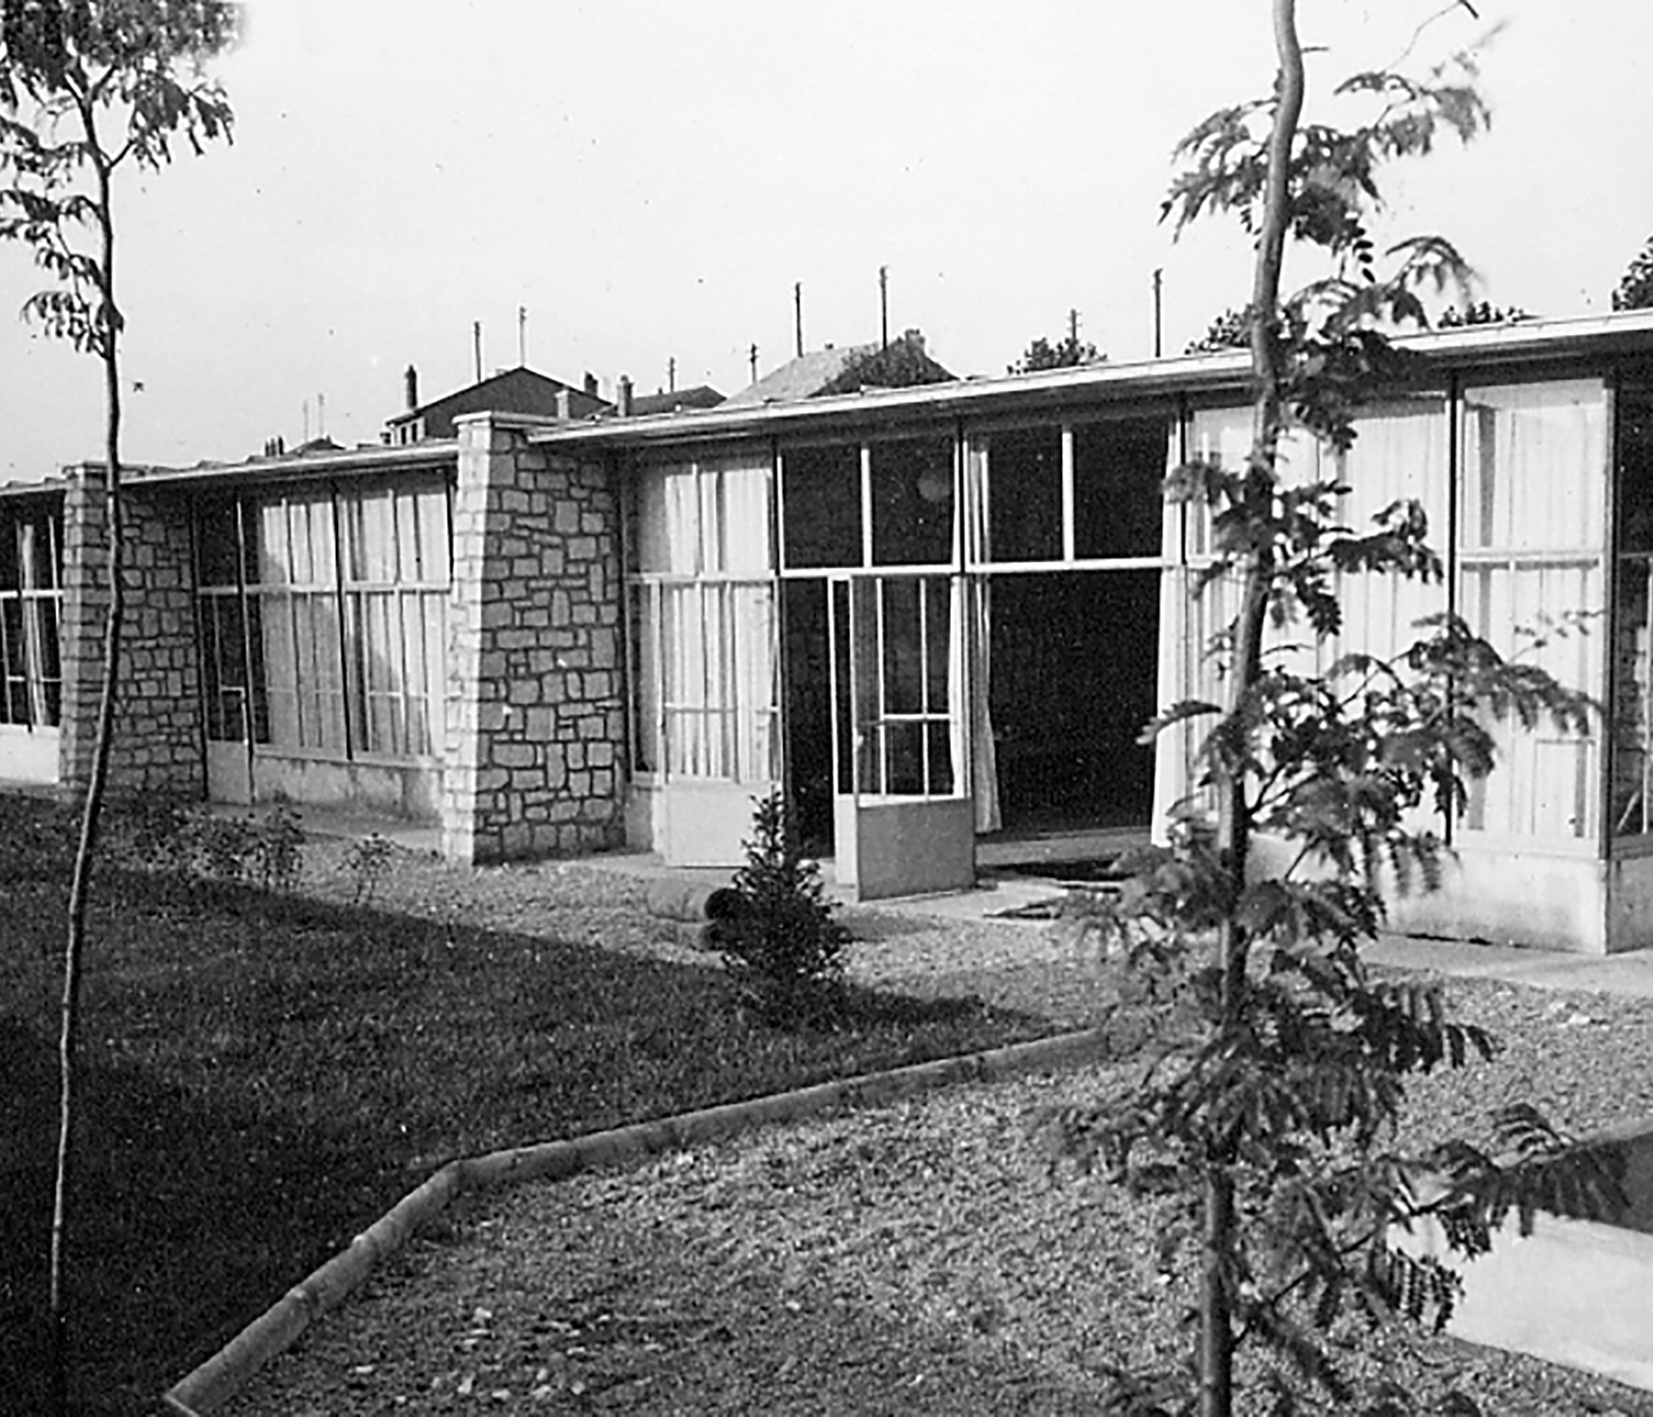 École maternelle du Placieux, Villiers-lès-Nancy, 1951 (H. Prouvé, arch.).